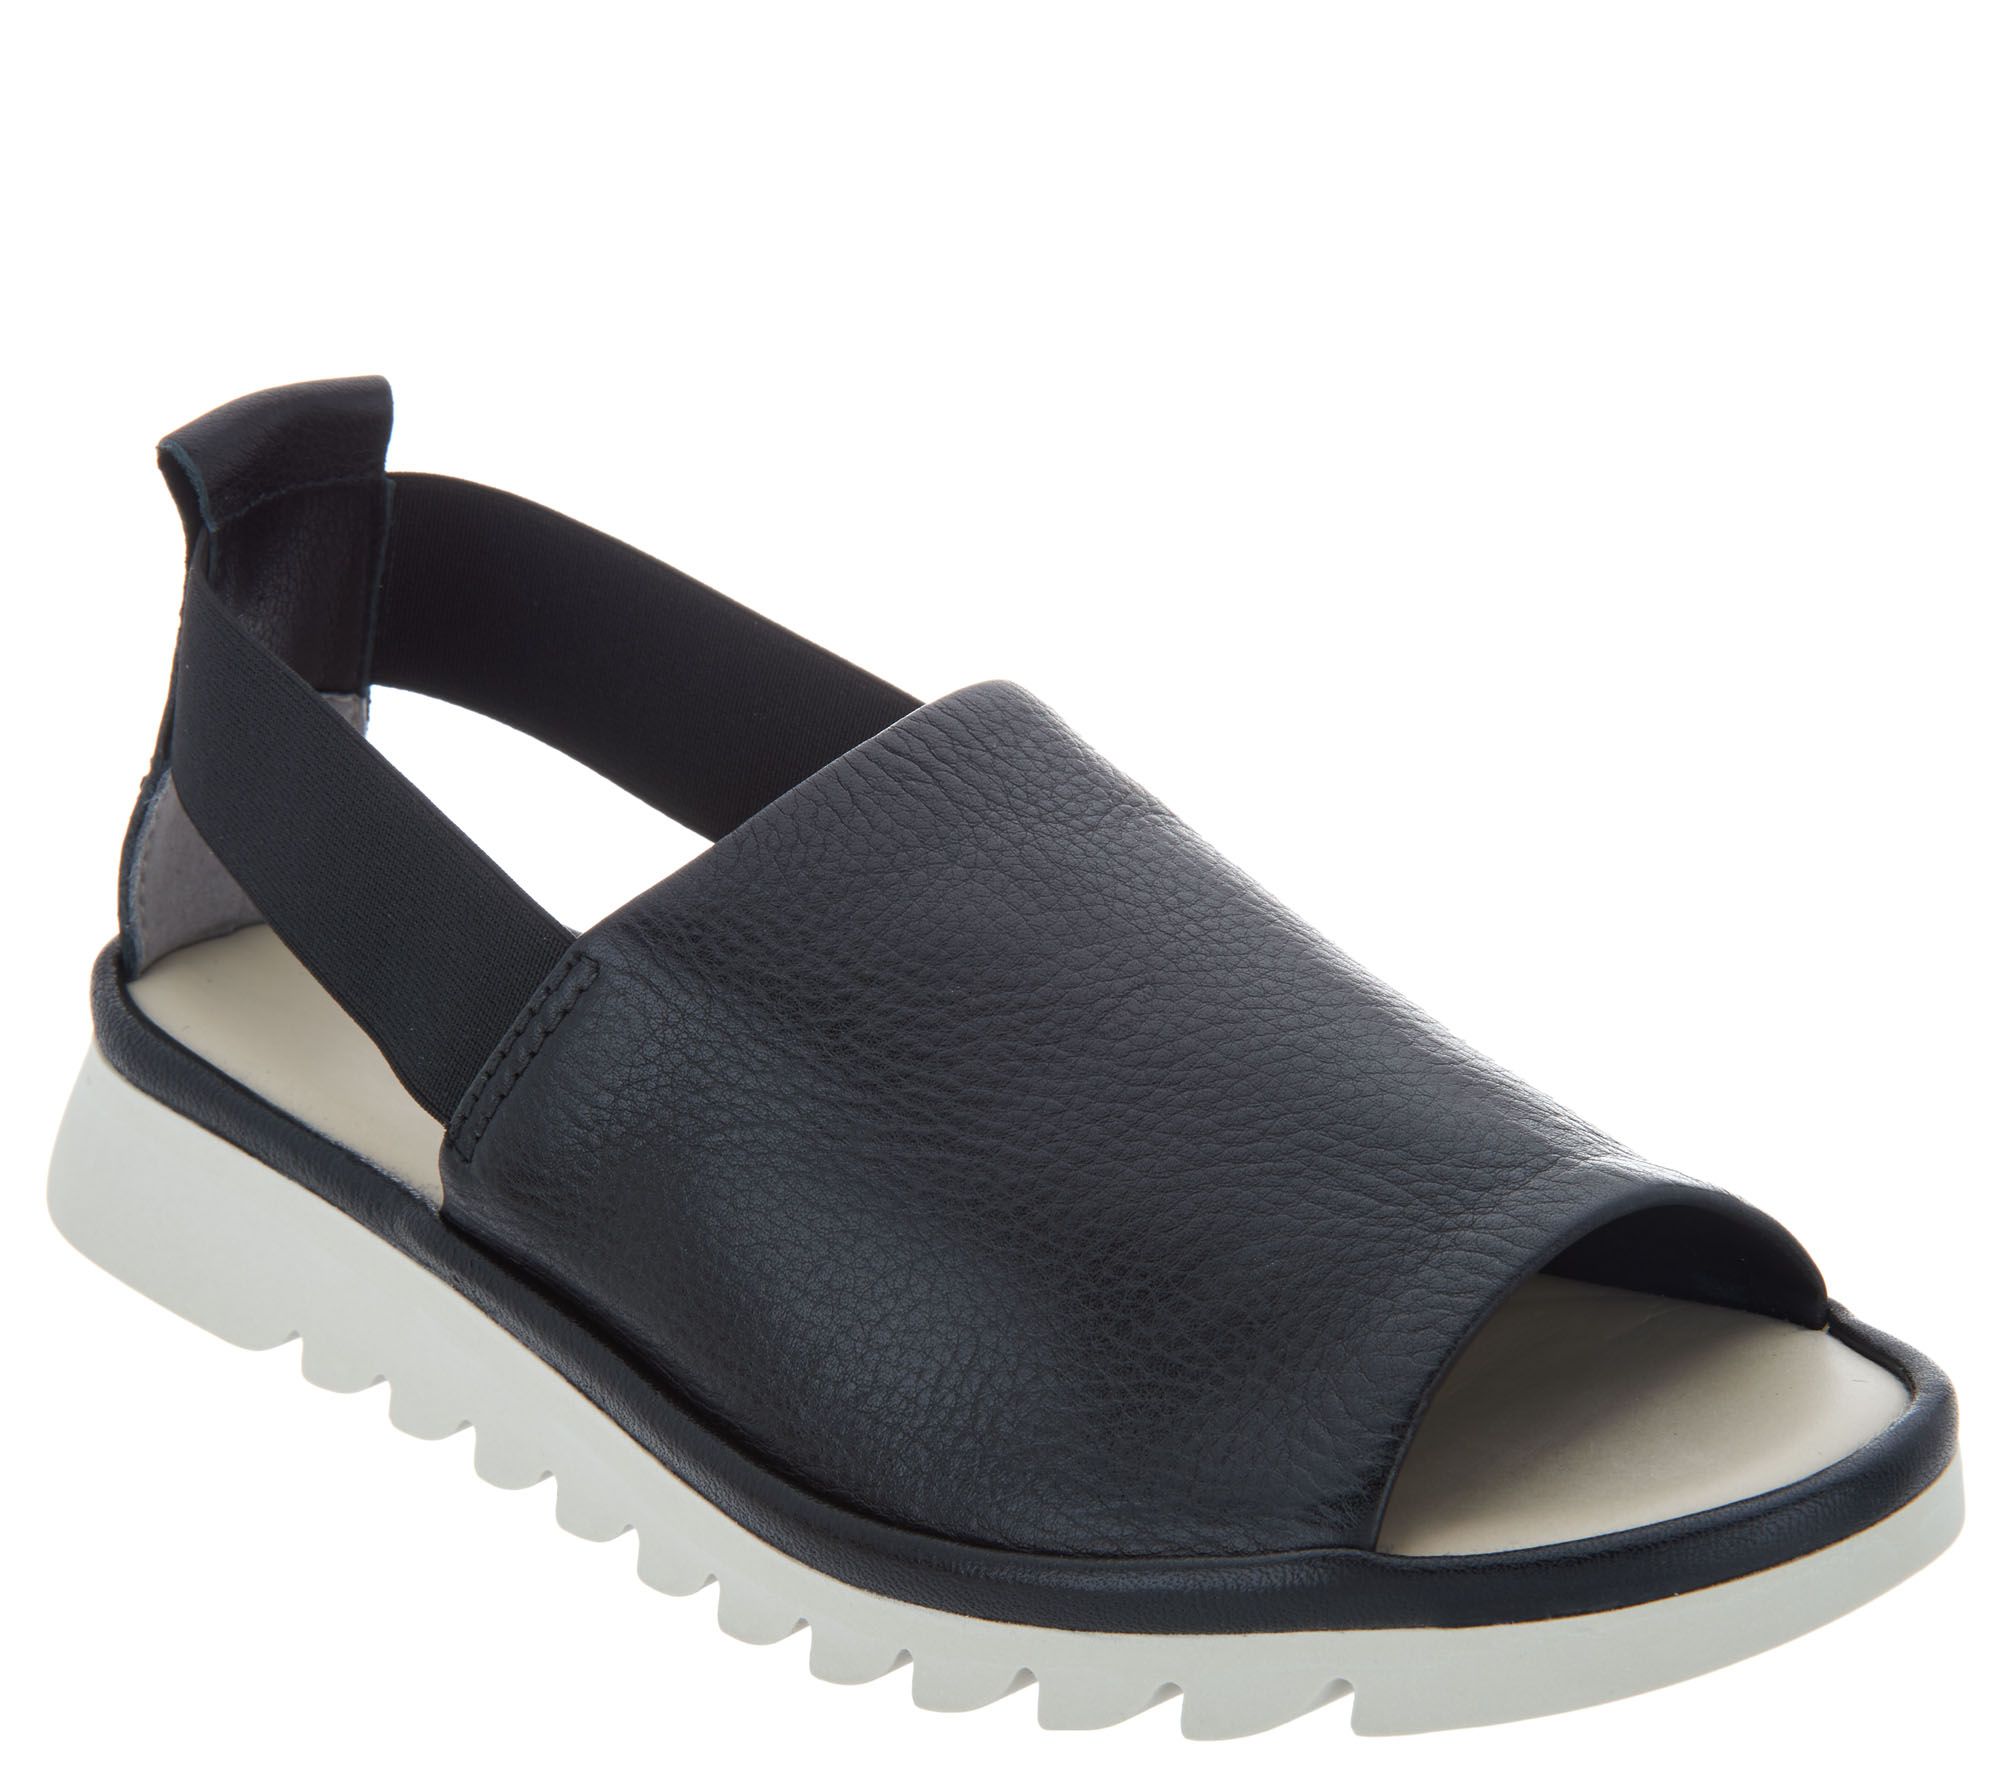 flexx shoreline sandals